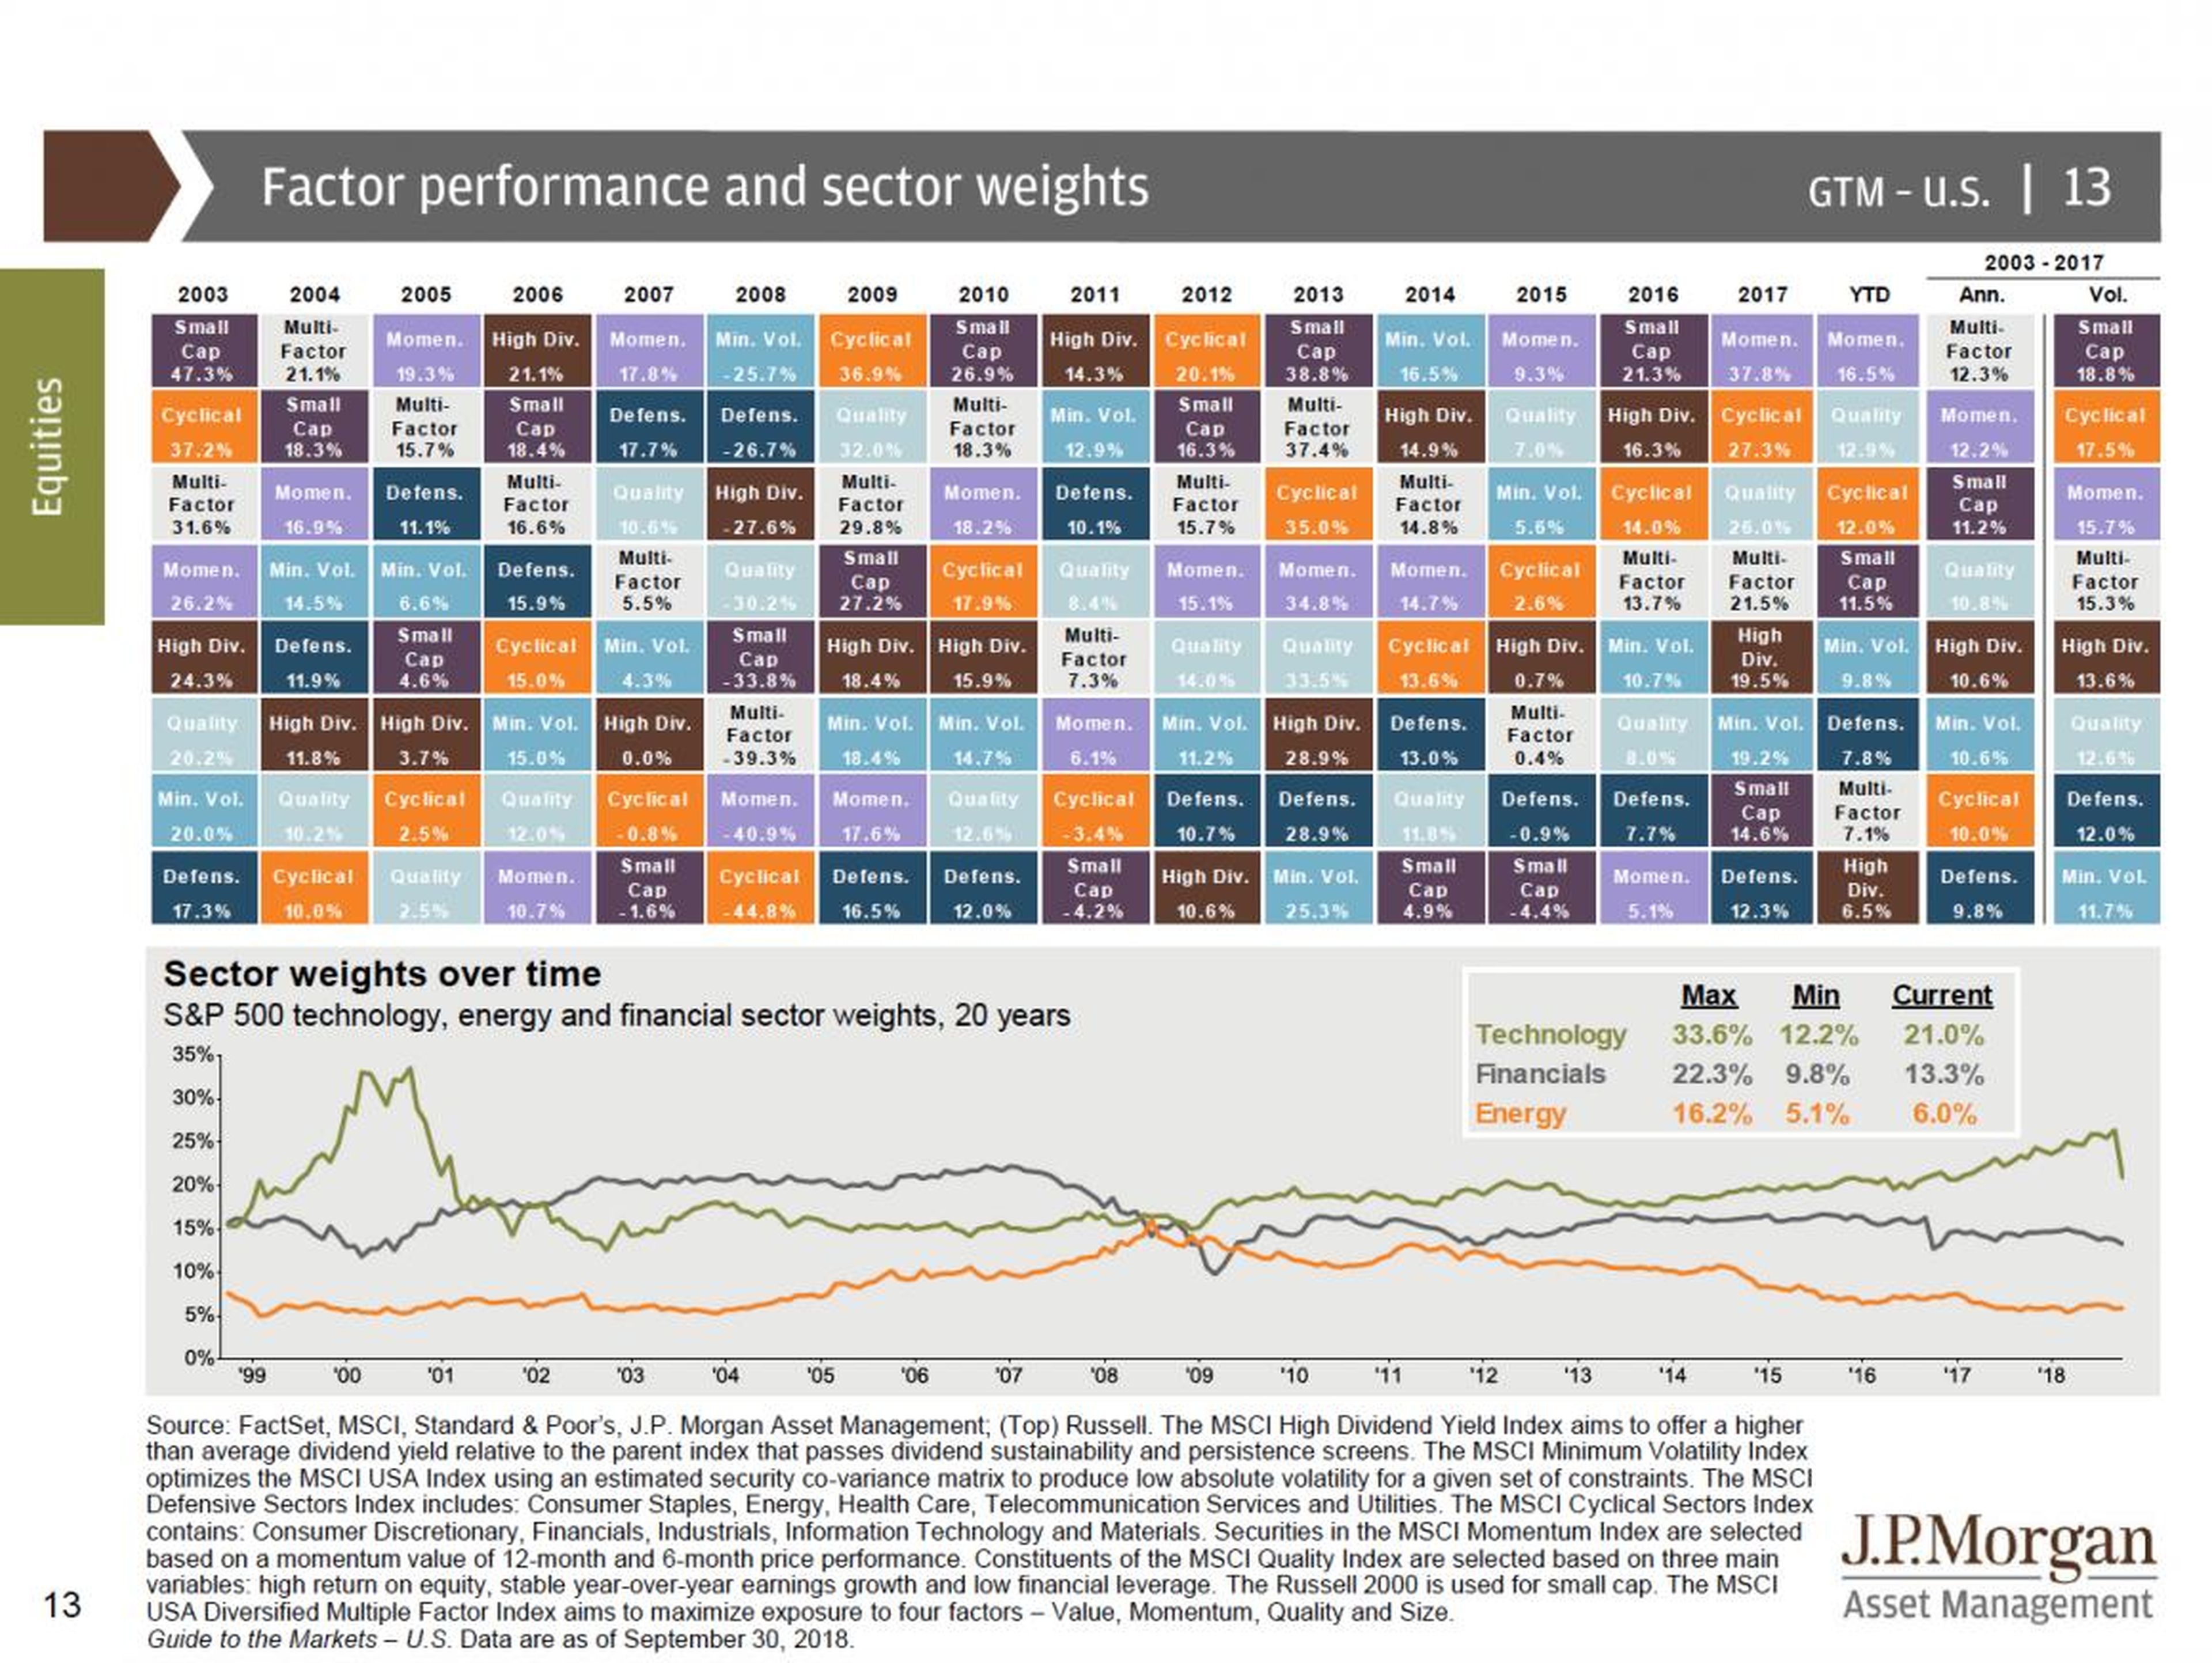 La guía definitiva de JP Morgan sobre mercados y economía